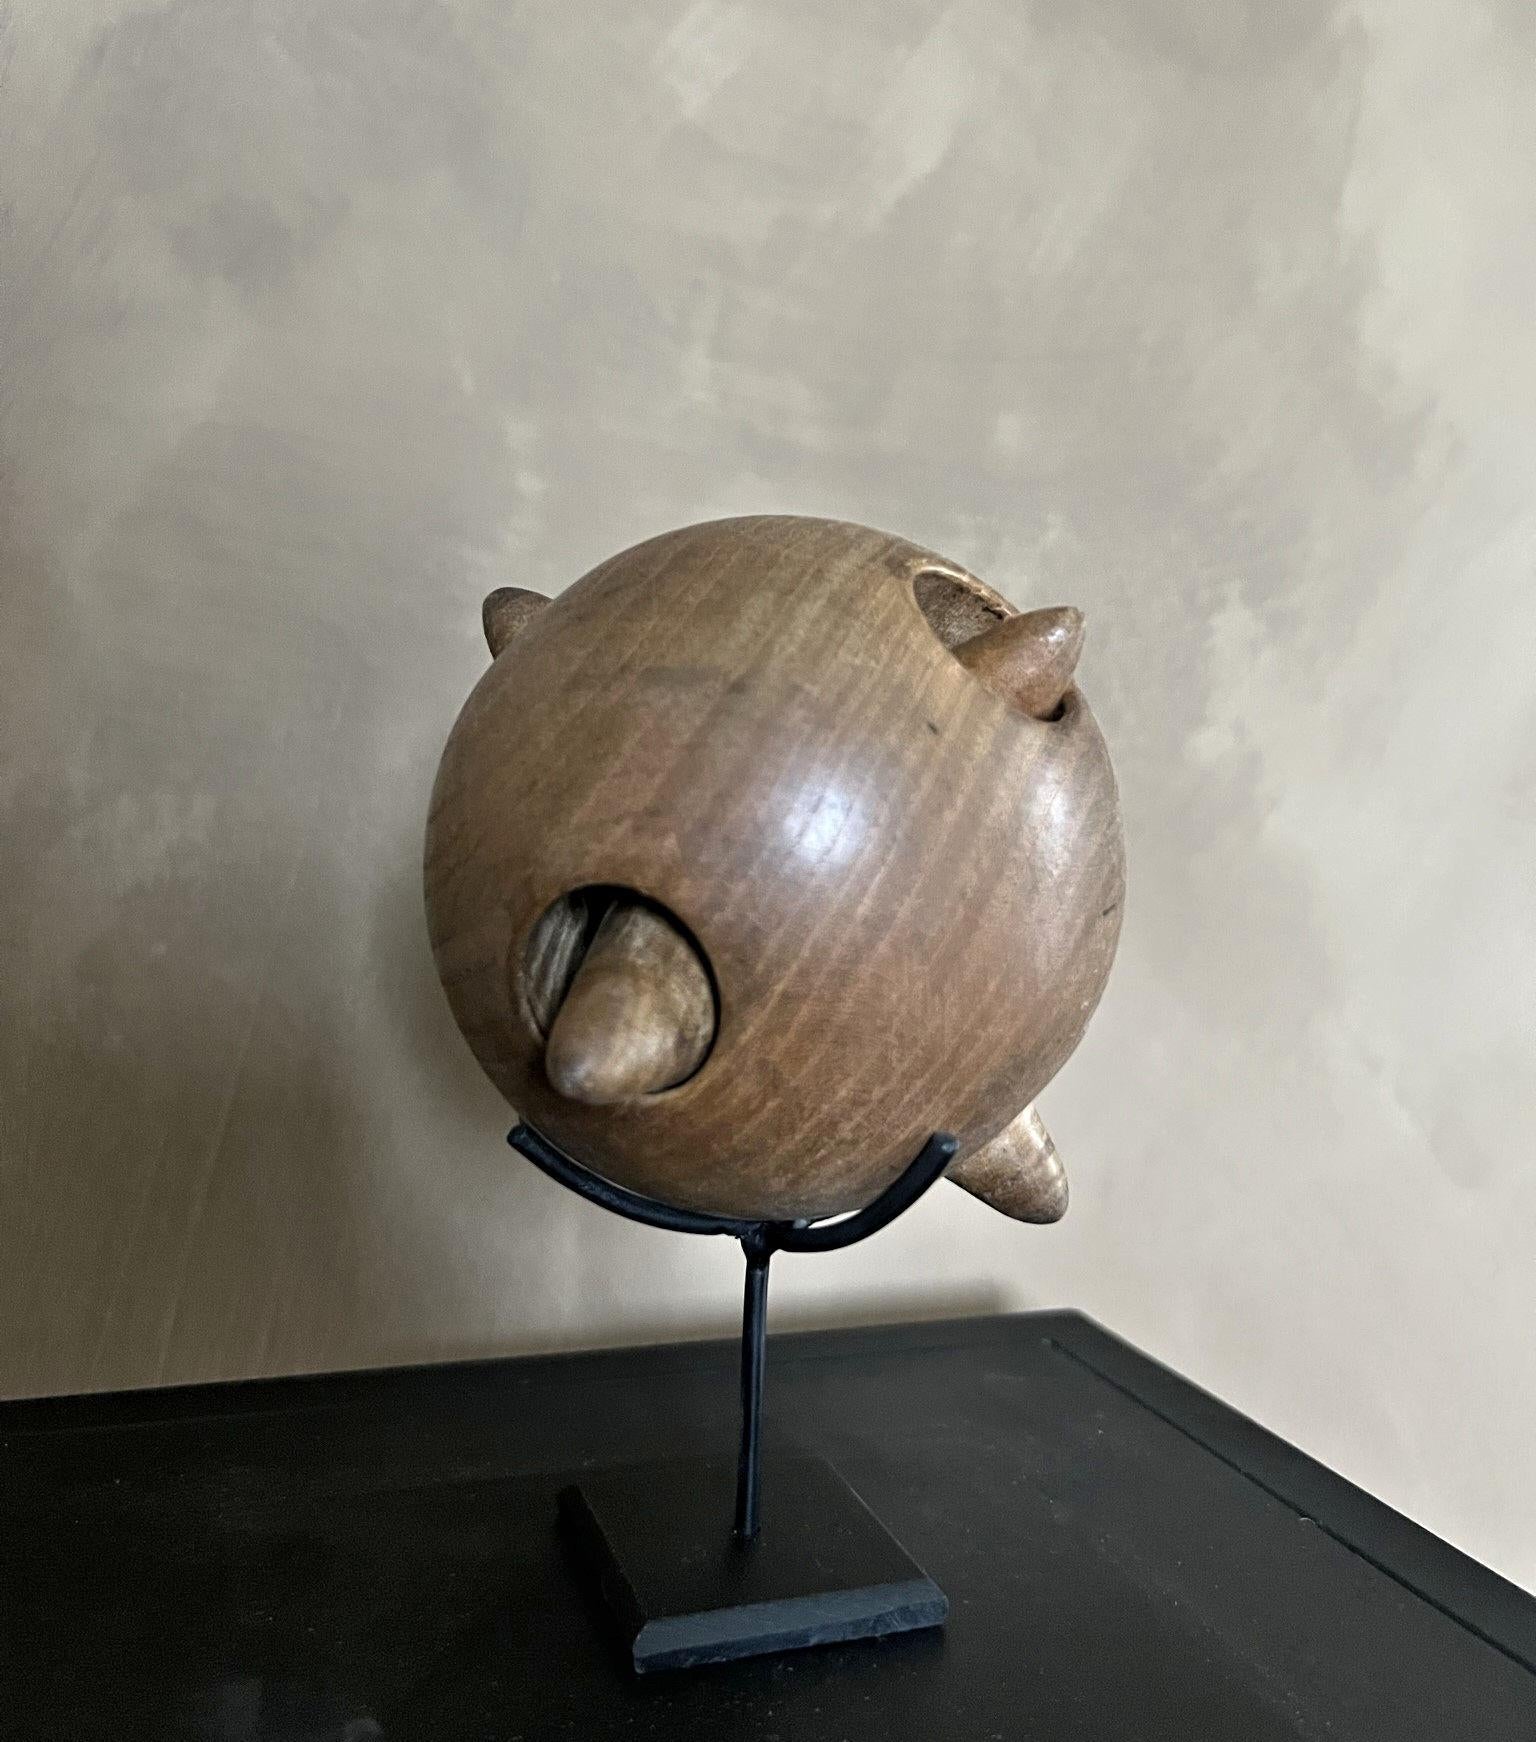 Une sphère en bois d'érable magnifiquement tournée contenant une deuxième sphère en forme d'étoile. Les objets de ce type trouvent leur origine au XVIe siècle, lorsque l'intérêt pour les sciences, les mathématiques et les arts s'est largement